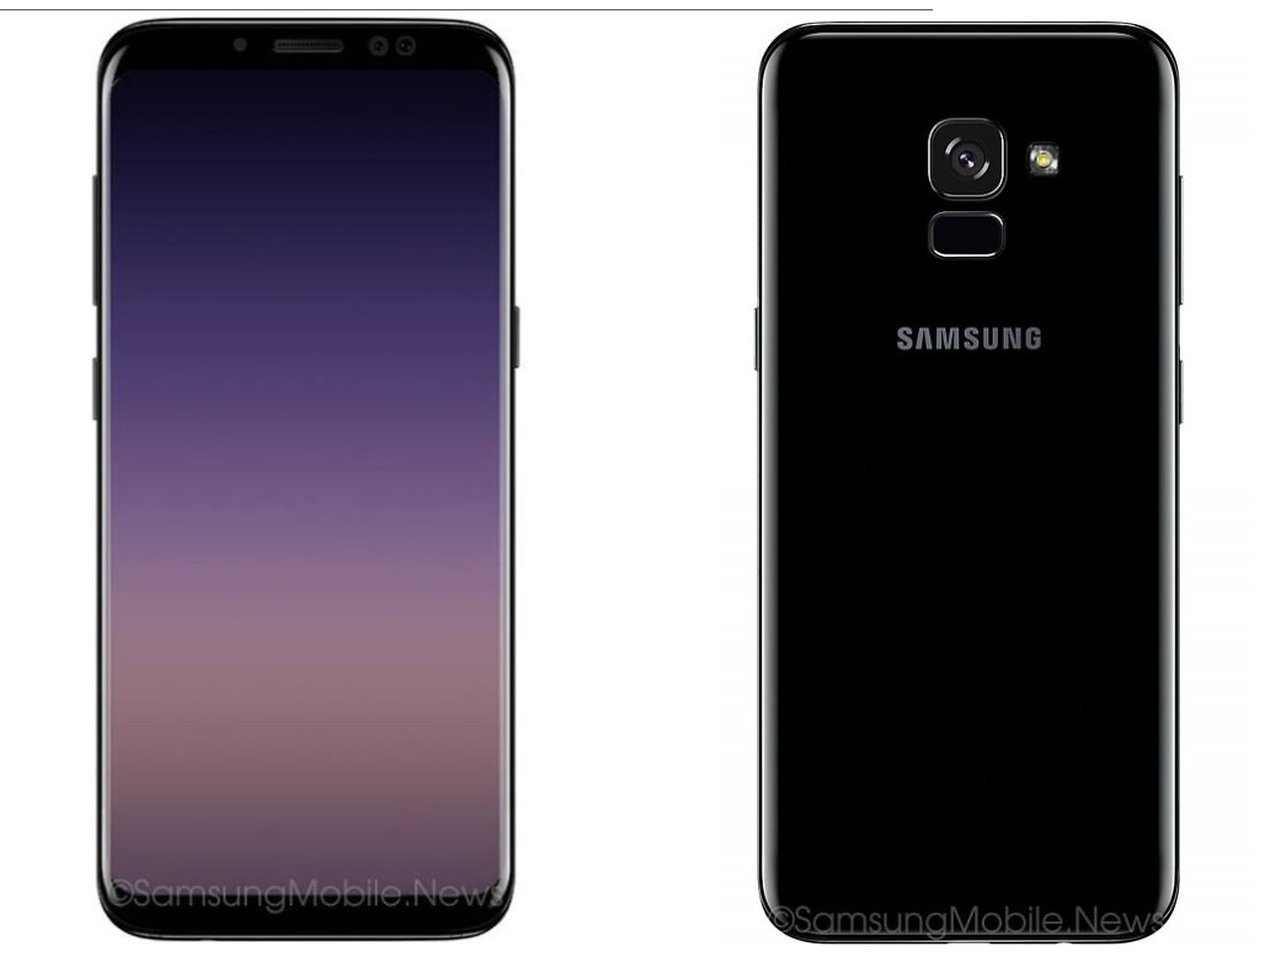 Samsung galaxy a32